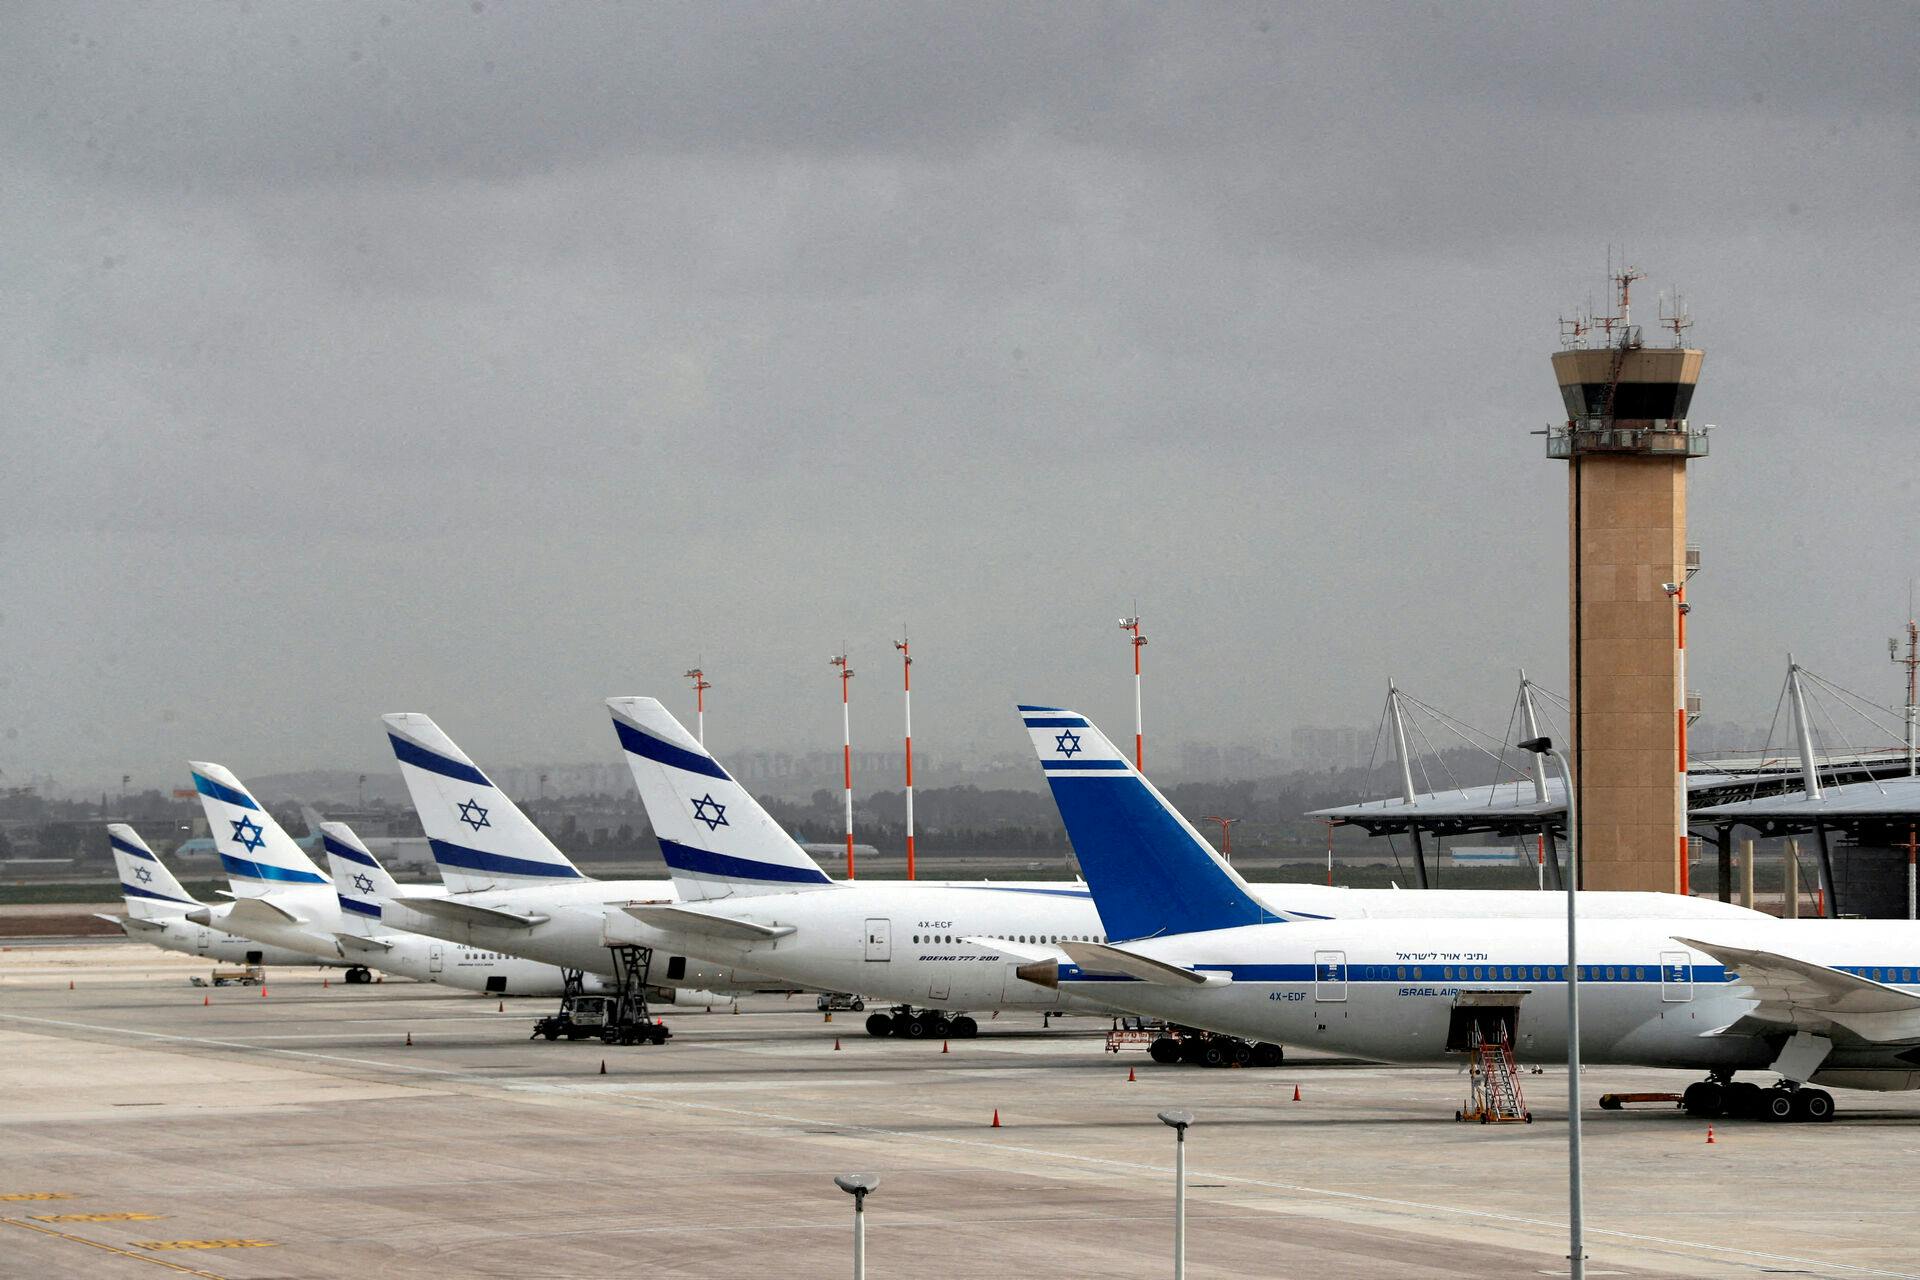 Det nationale flyseskab "El Al" fortsætter sine flyvninger trods risikoen for angreb.